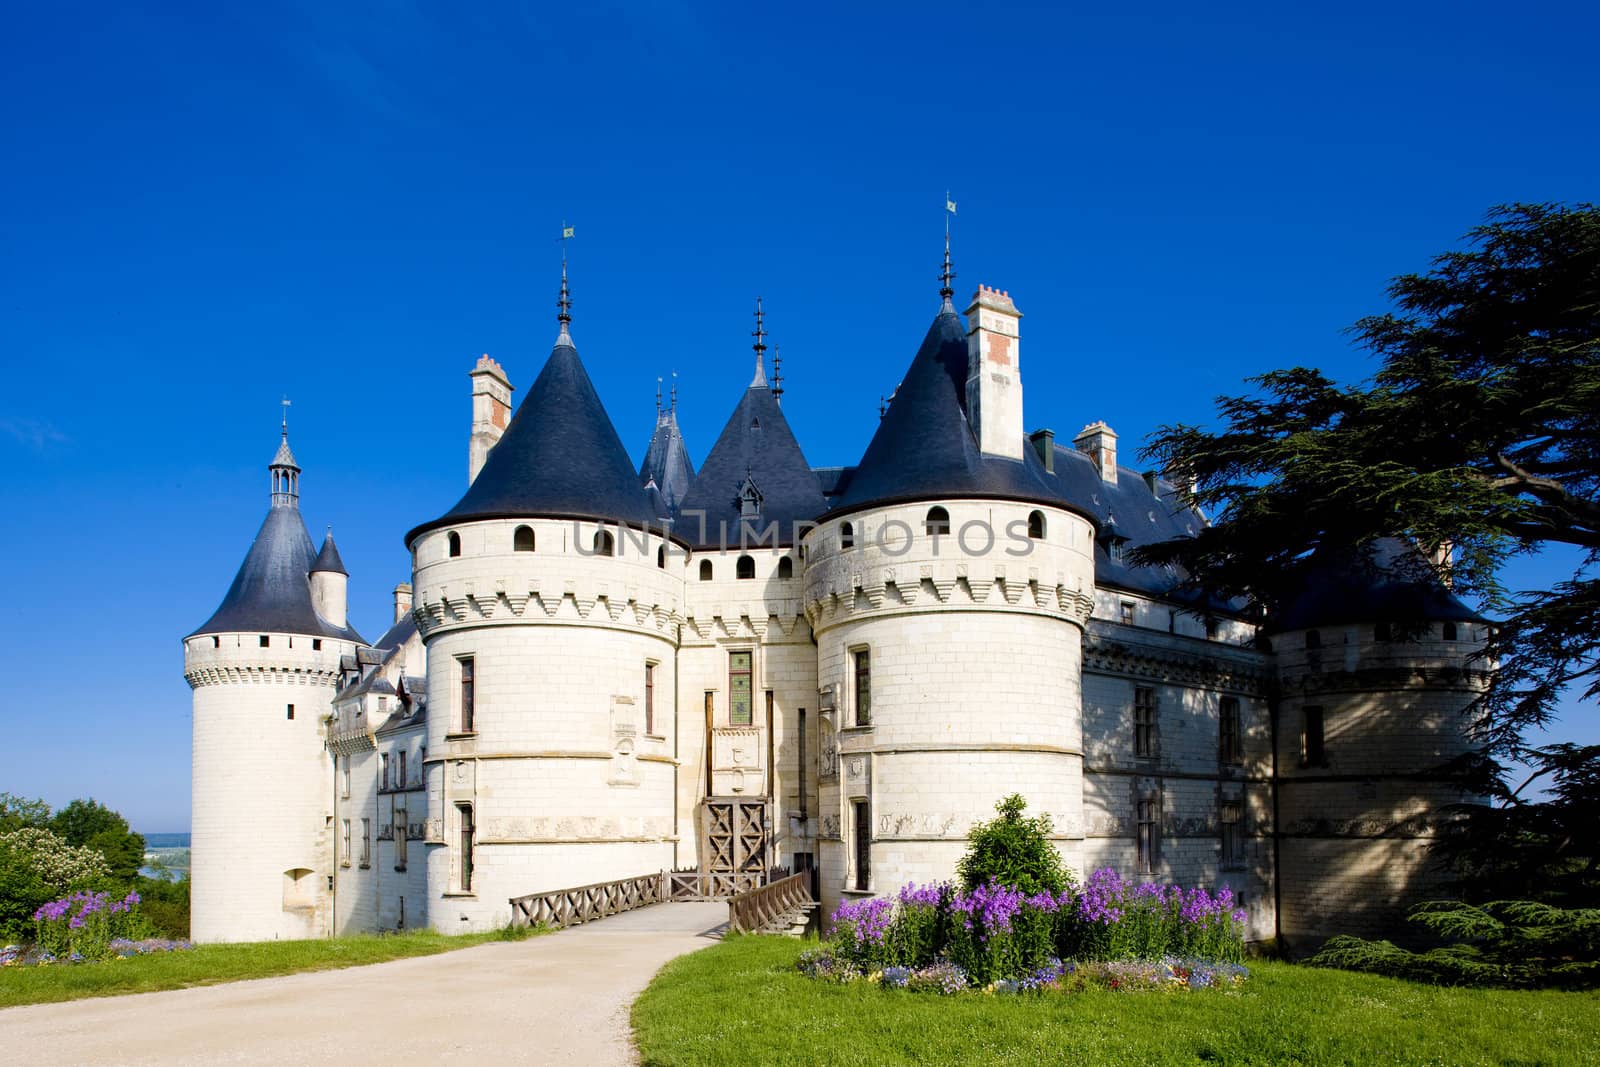 Chaumont-sur-Loire Castle, Centre, France by phbcz